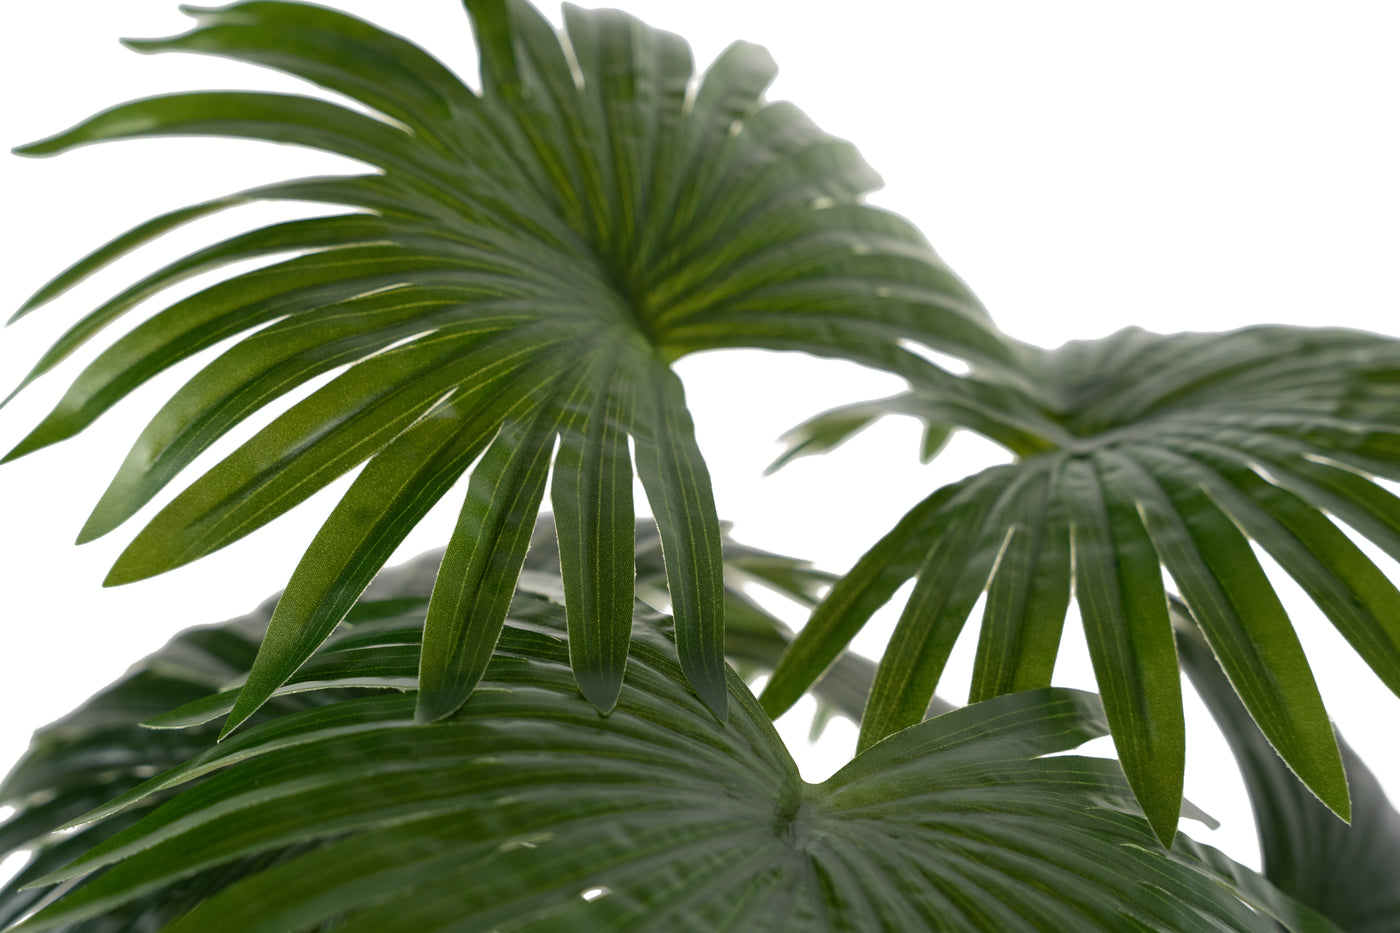 Palmier artificial Chamaerops humilis cu 9 frunze H50 cm